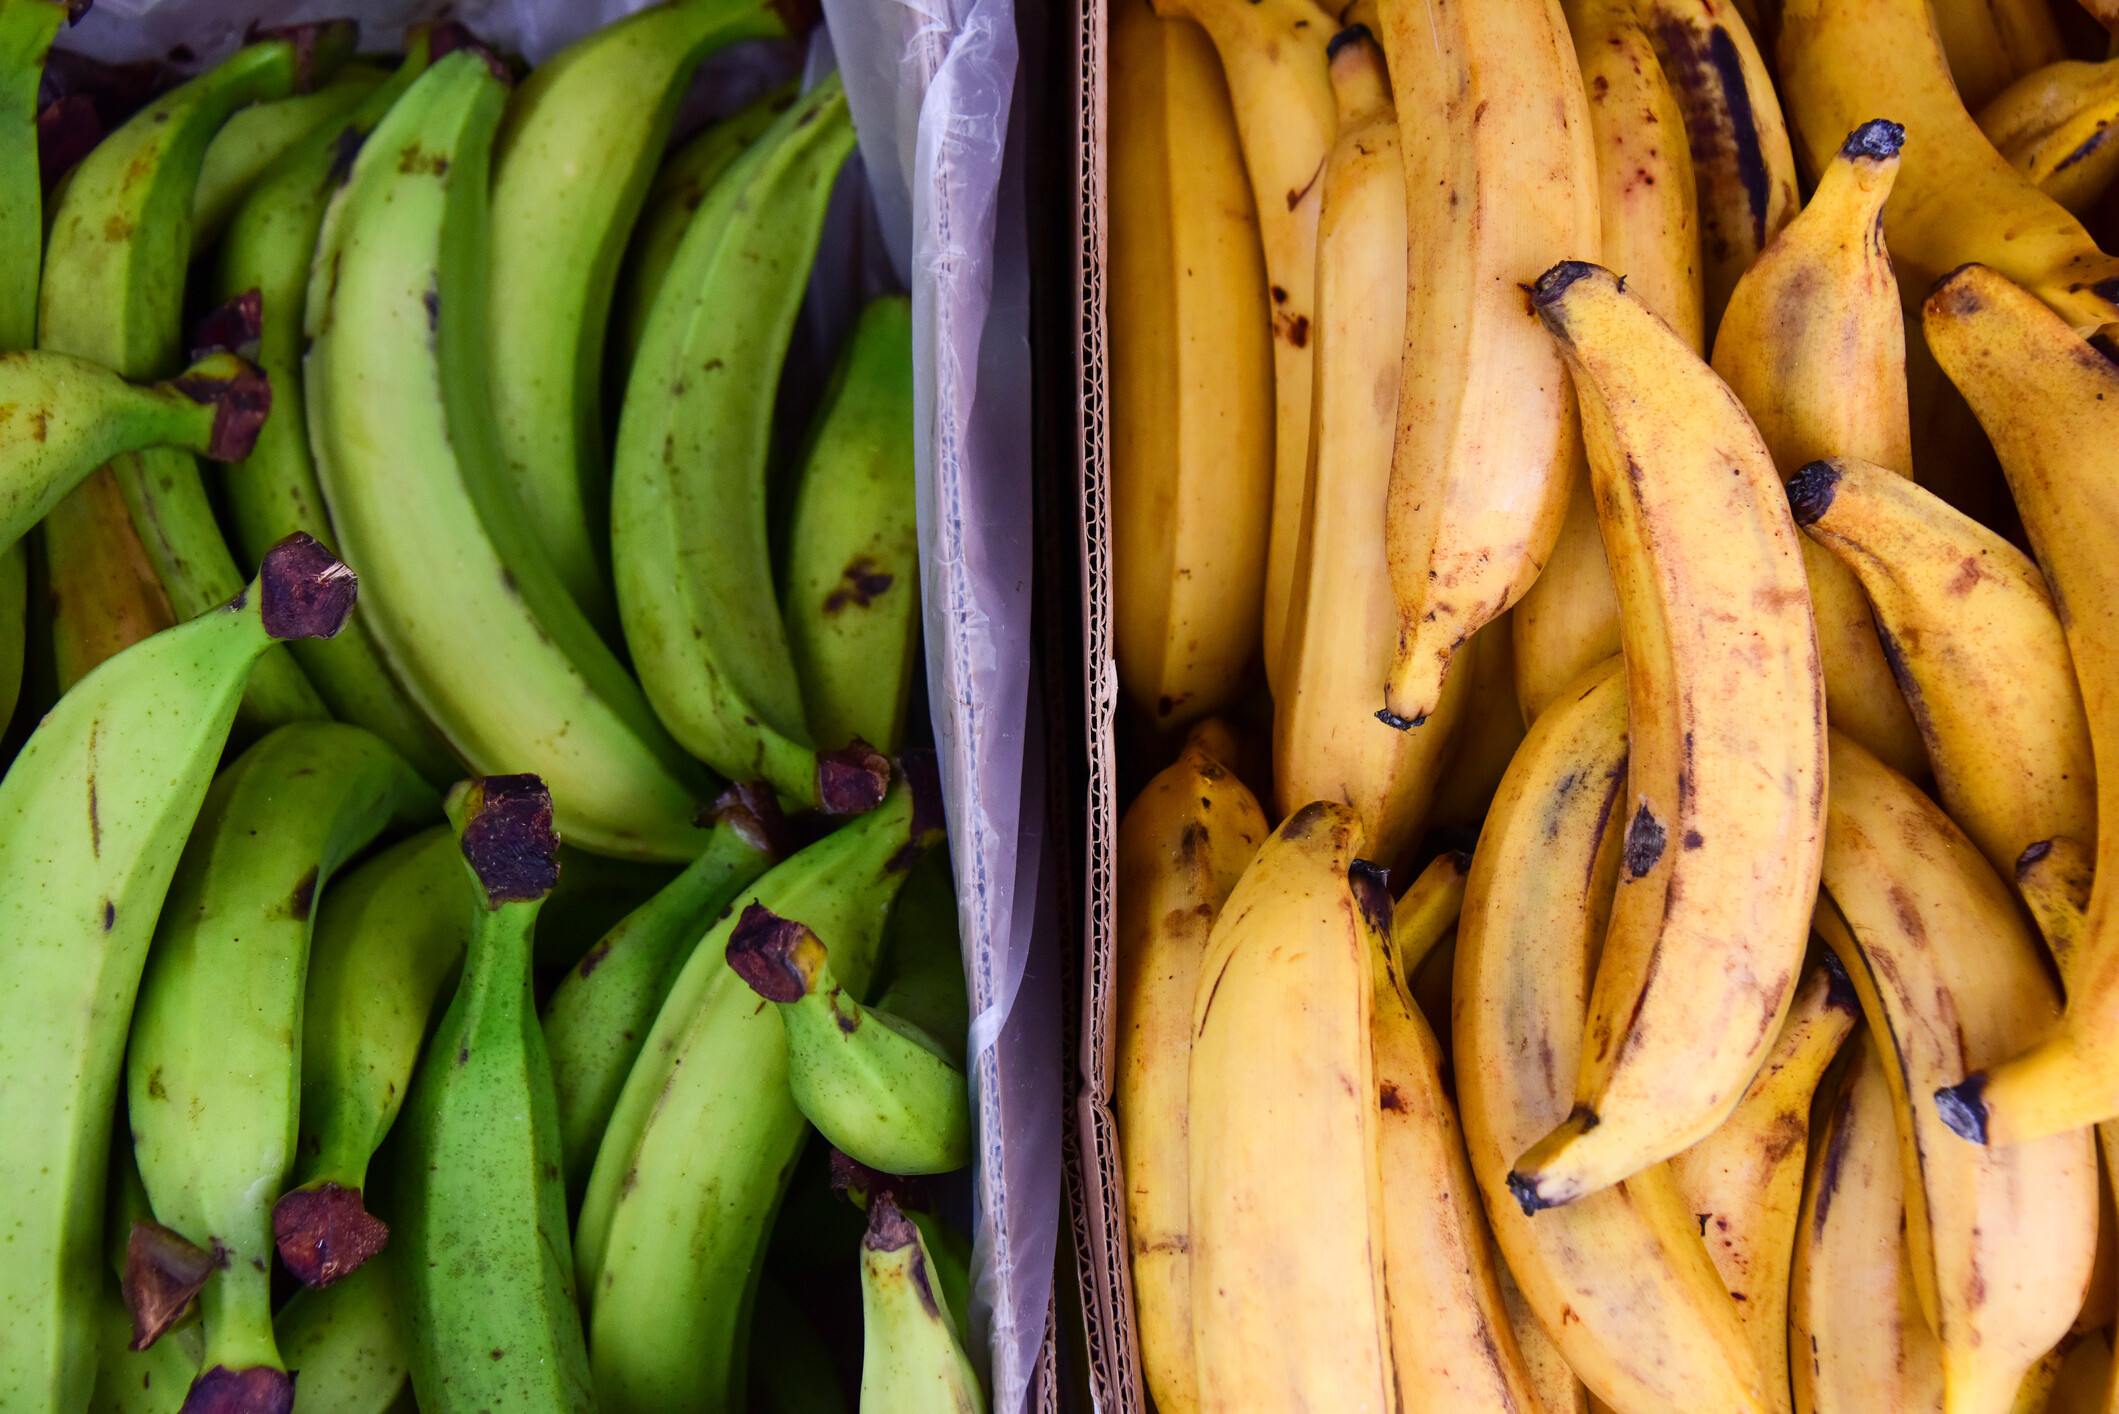 Banán kalória és tápanyag tartalma